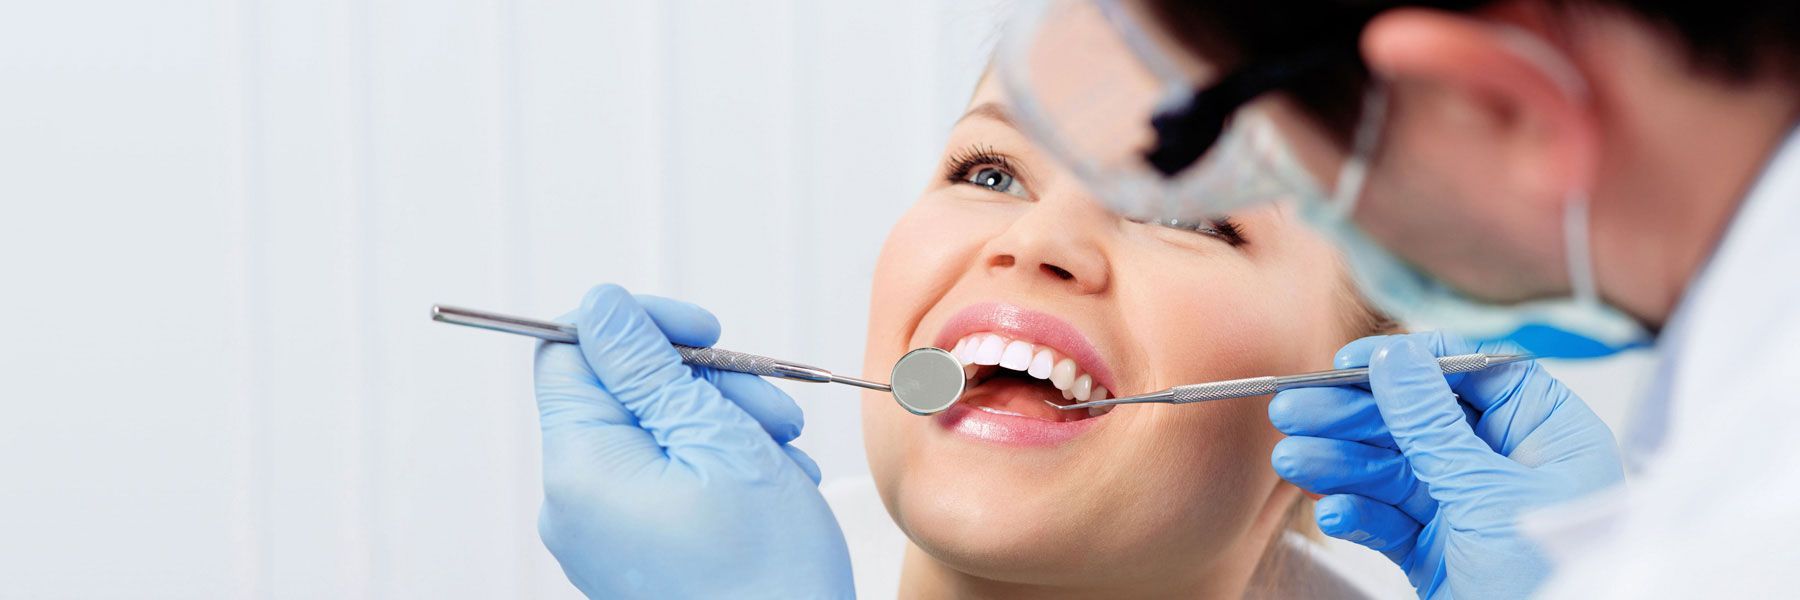 якісні послуги стоматології по доступним цінам